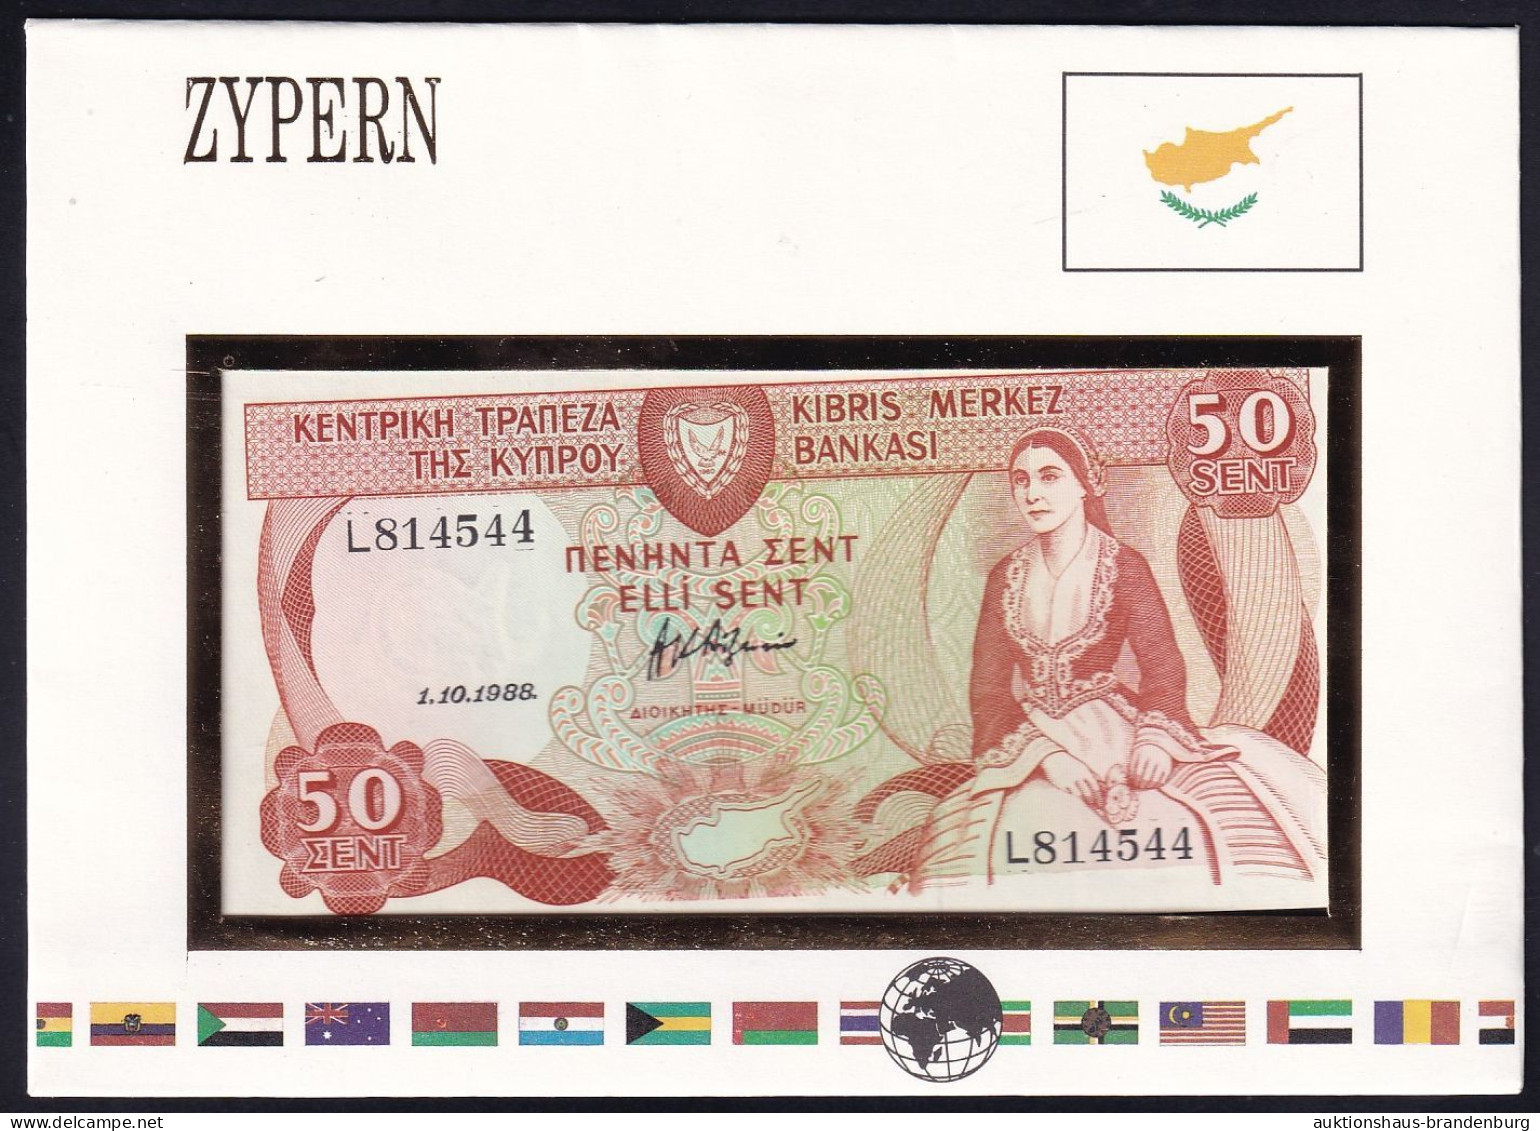 Zypern Cyprus: 50 Cents 1.10.1988 - Notenbriefe Der Welt - Cyprus